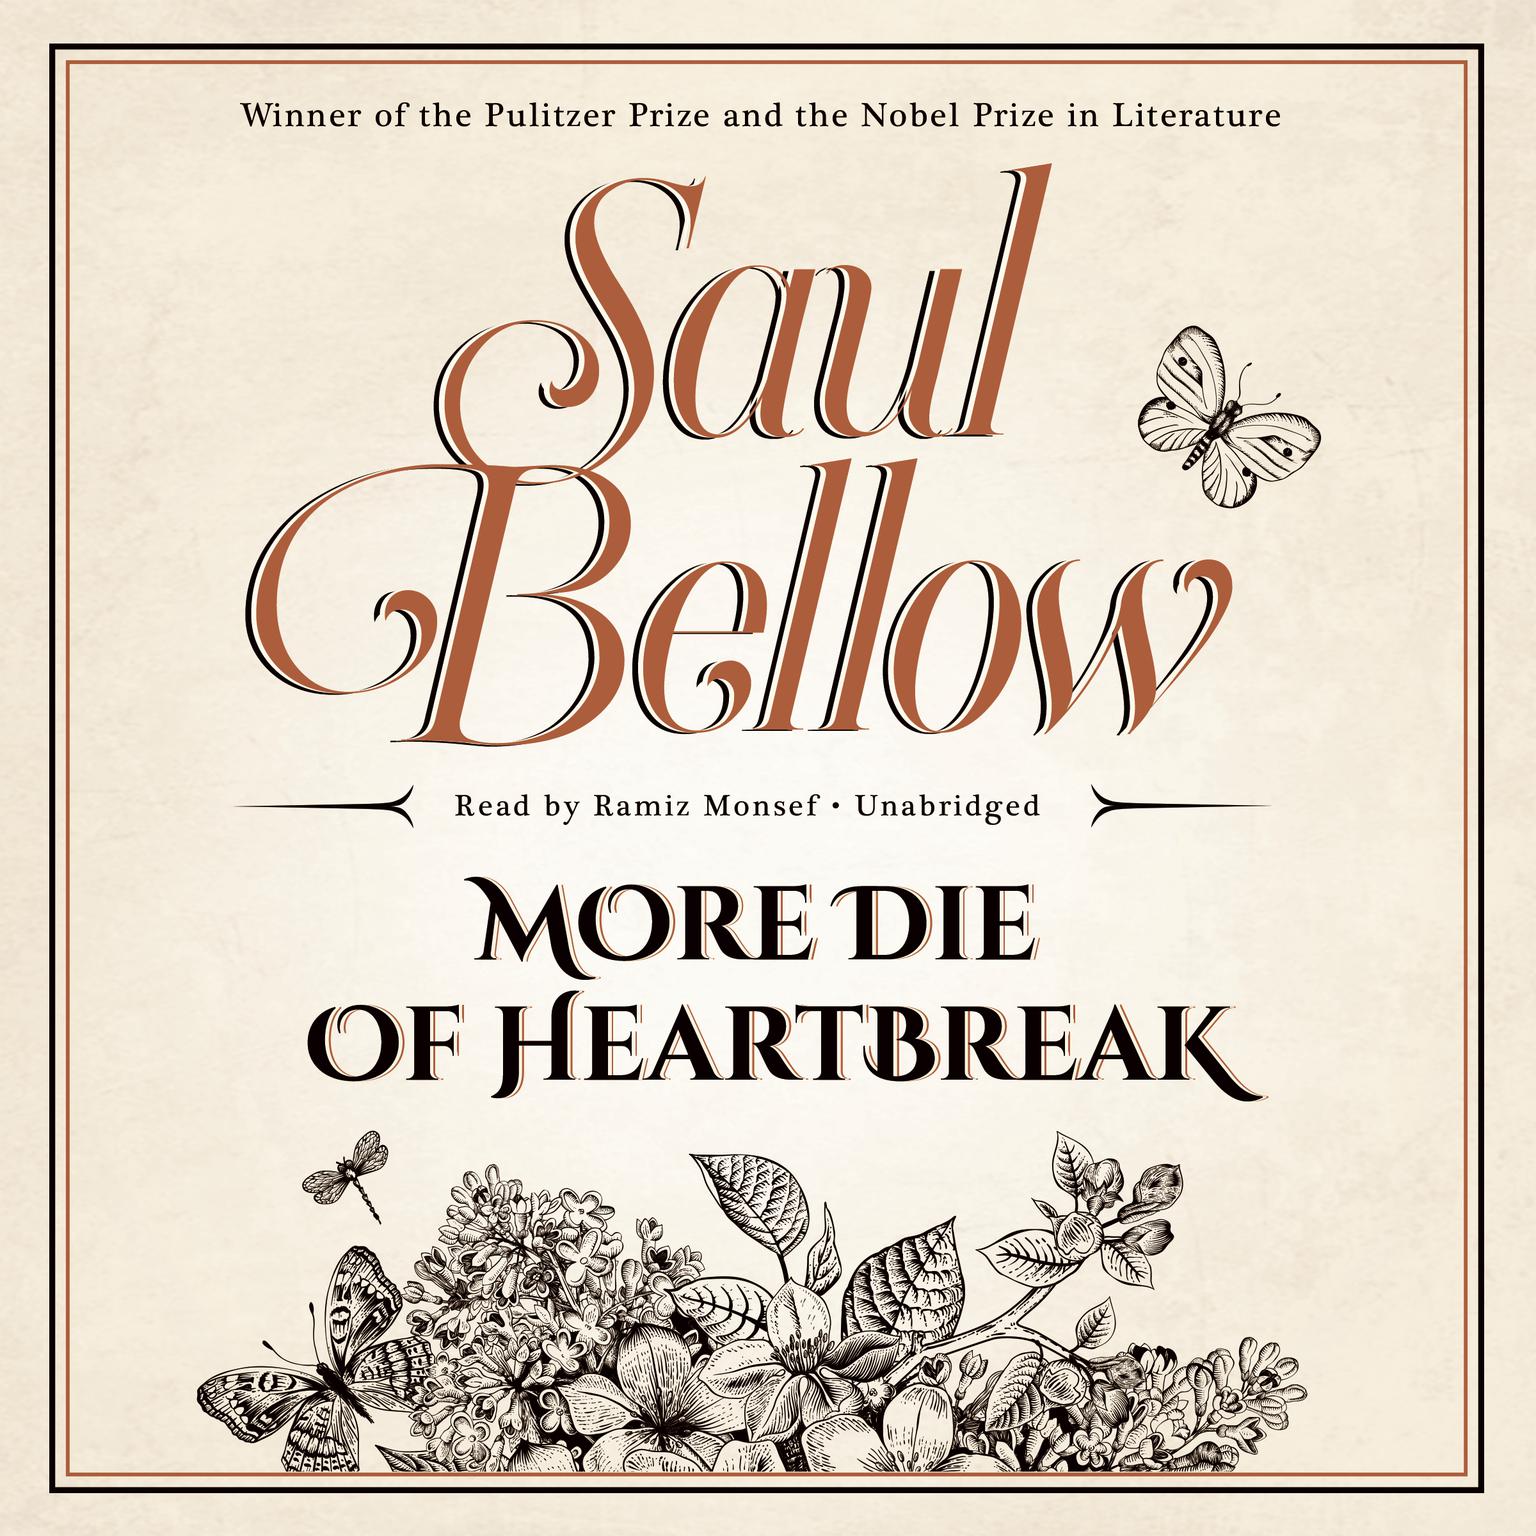 More Die of Heartbreak Audiobook, by Saul Bellow